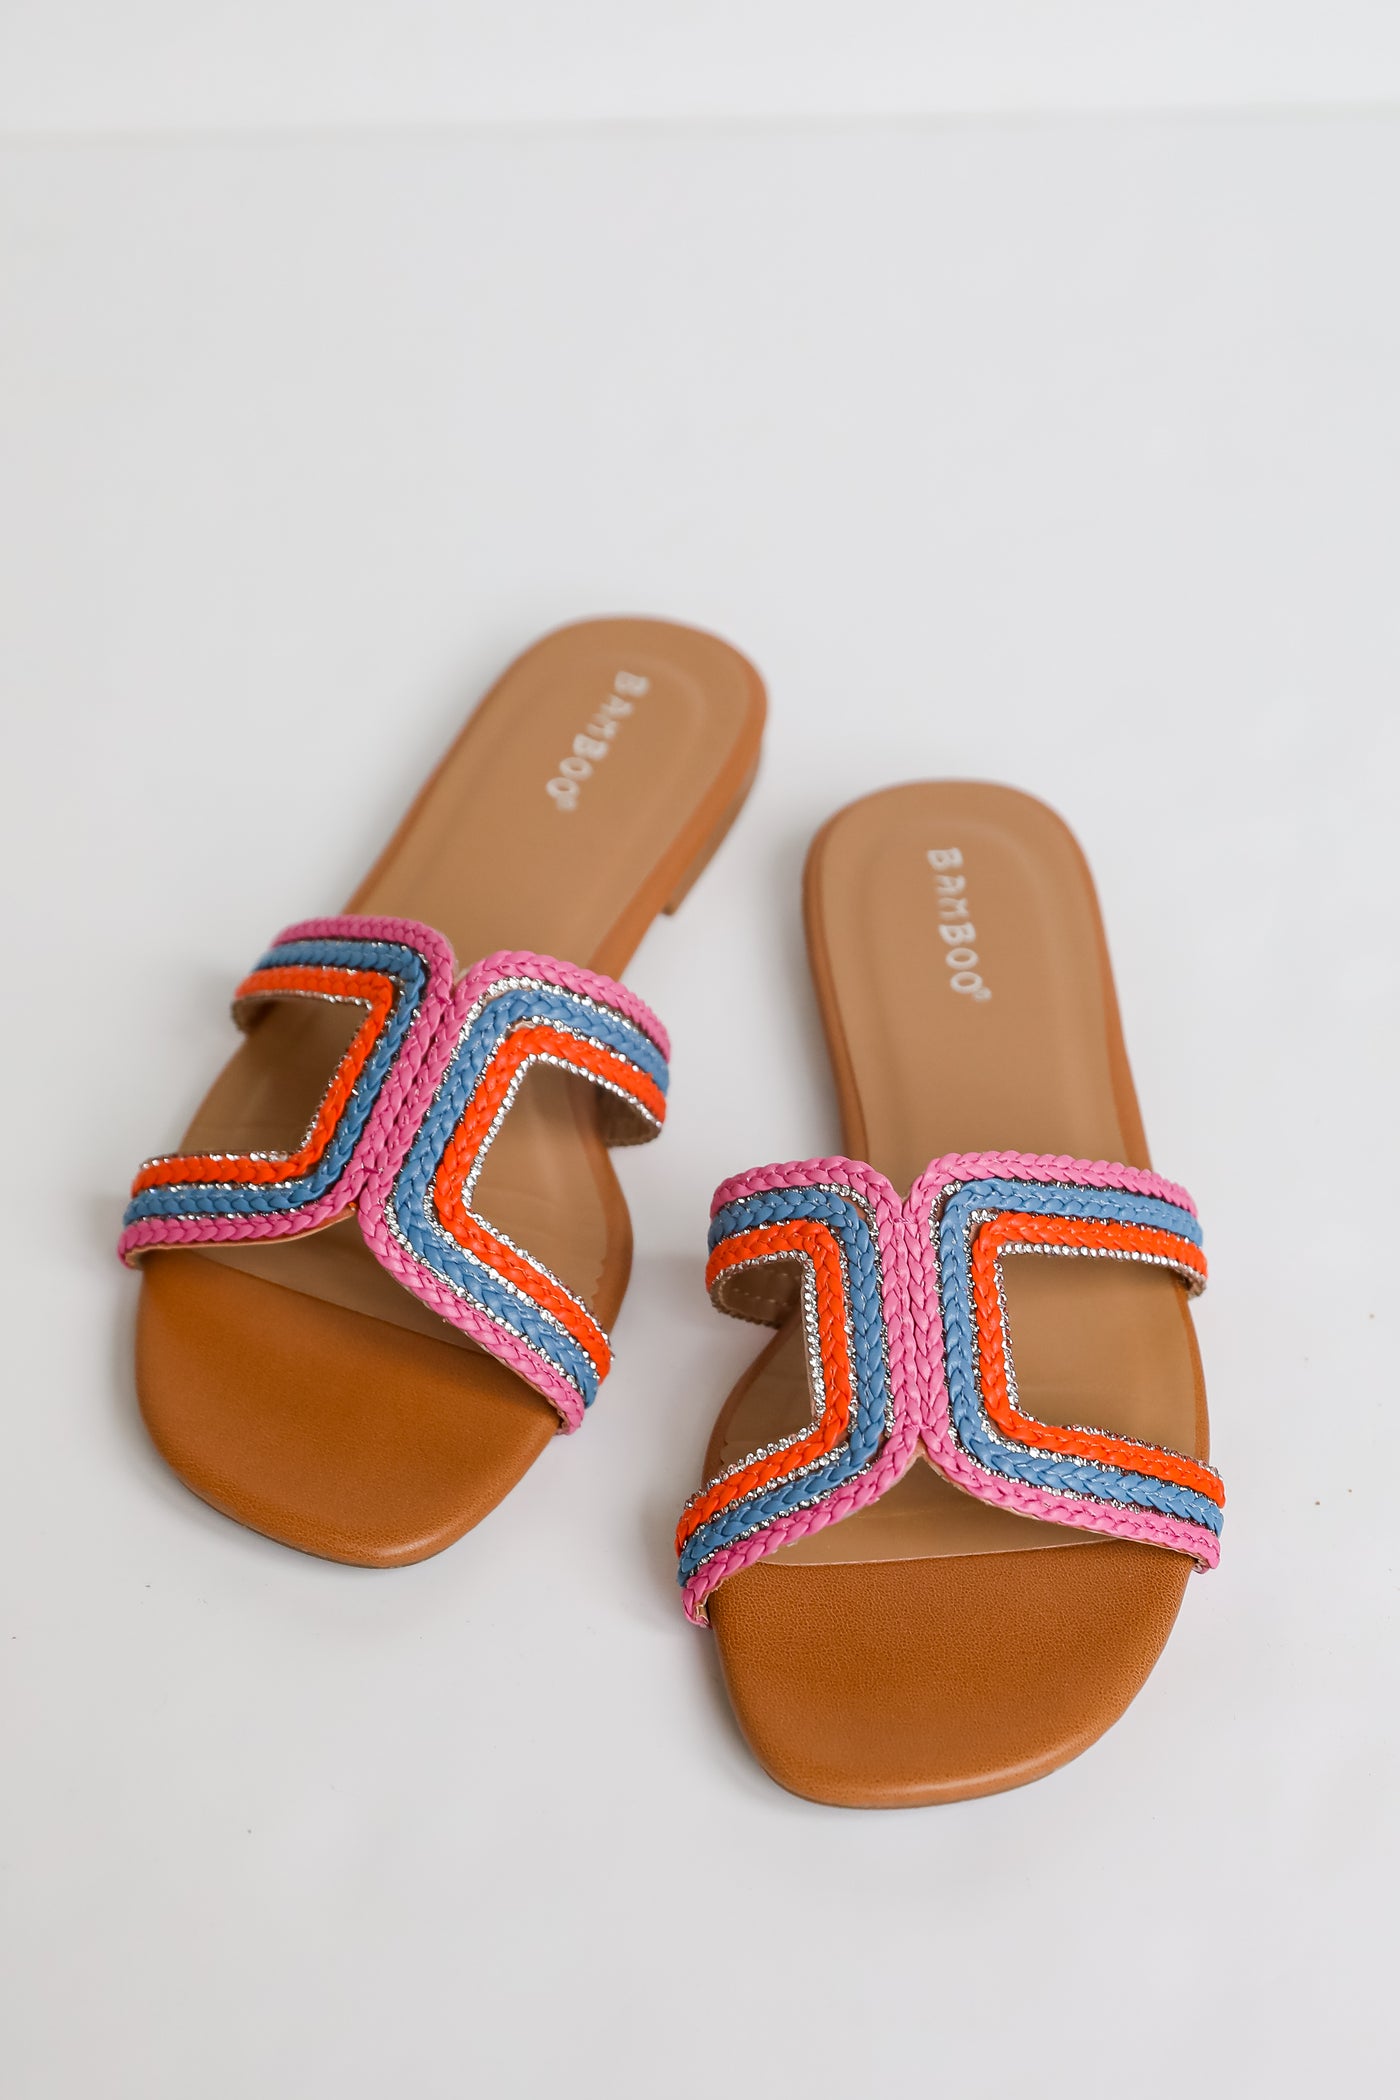 Hot Pink Slide Sandals for summer